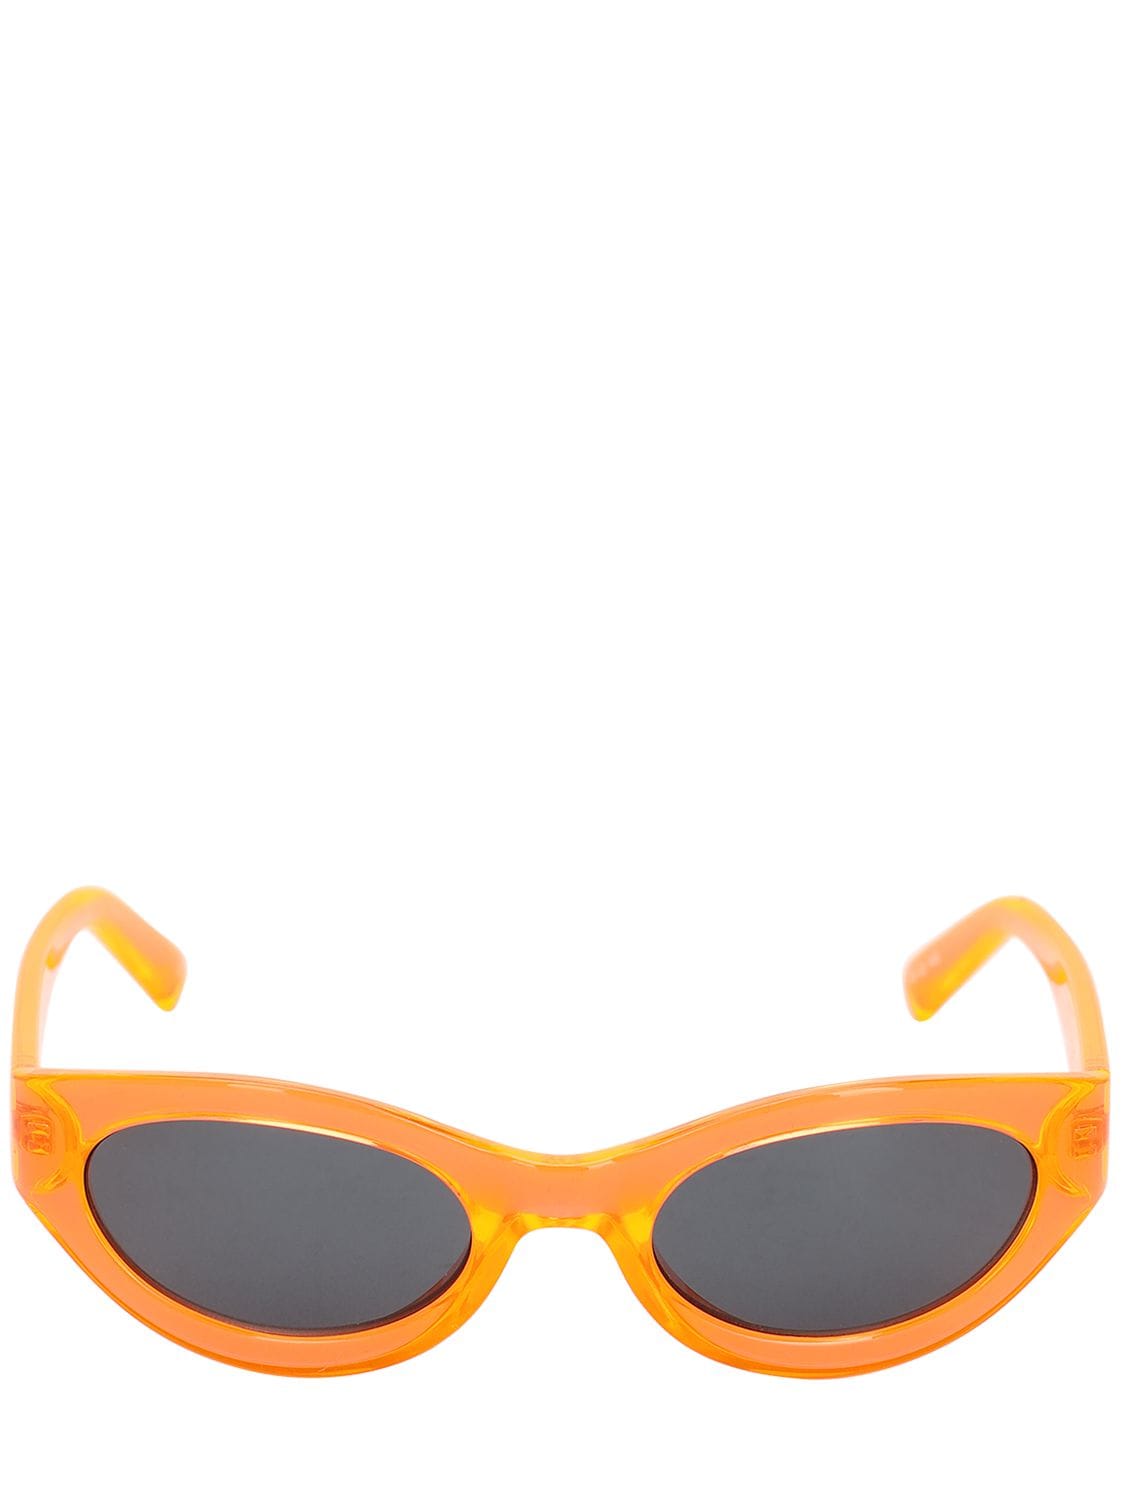 Le Specs Body Bumpin Round Neon Sunglasses In Orange,black